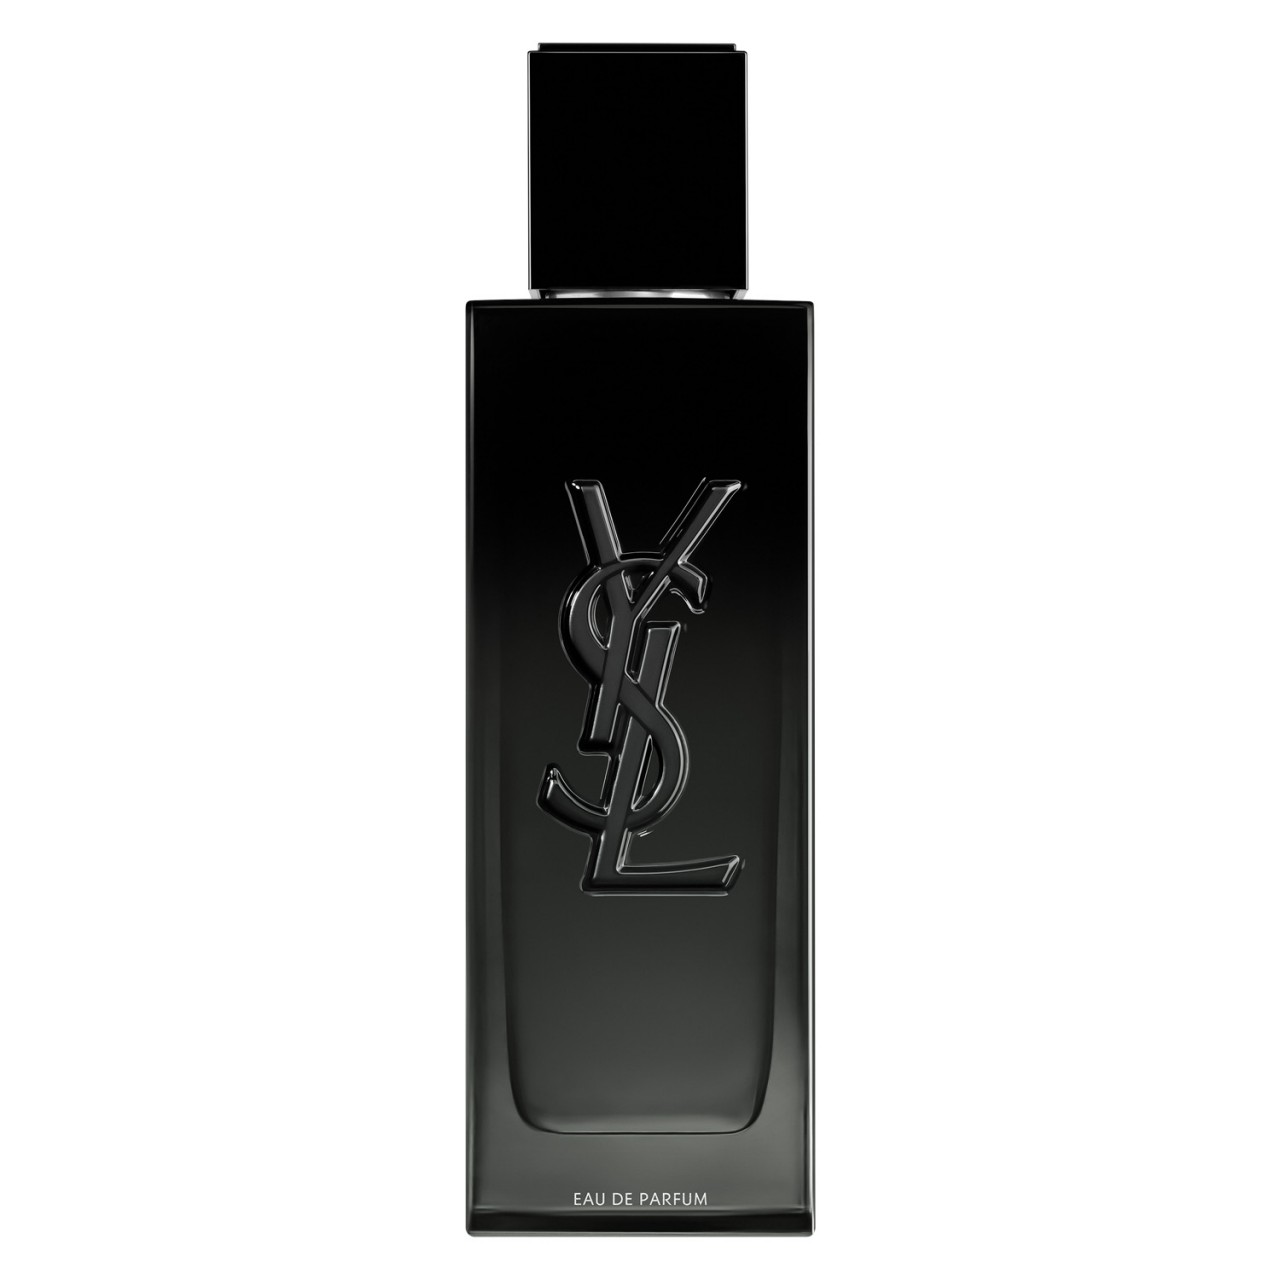 MYSLF - Eau de Parfum von Yves Saint Laurent